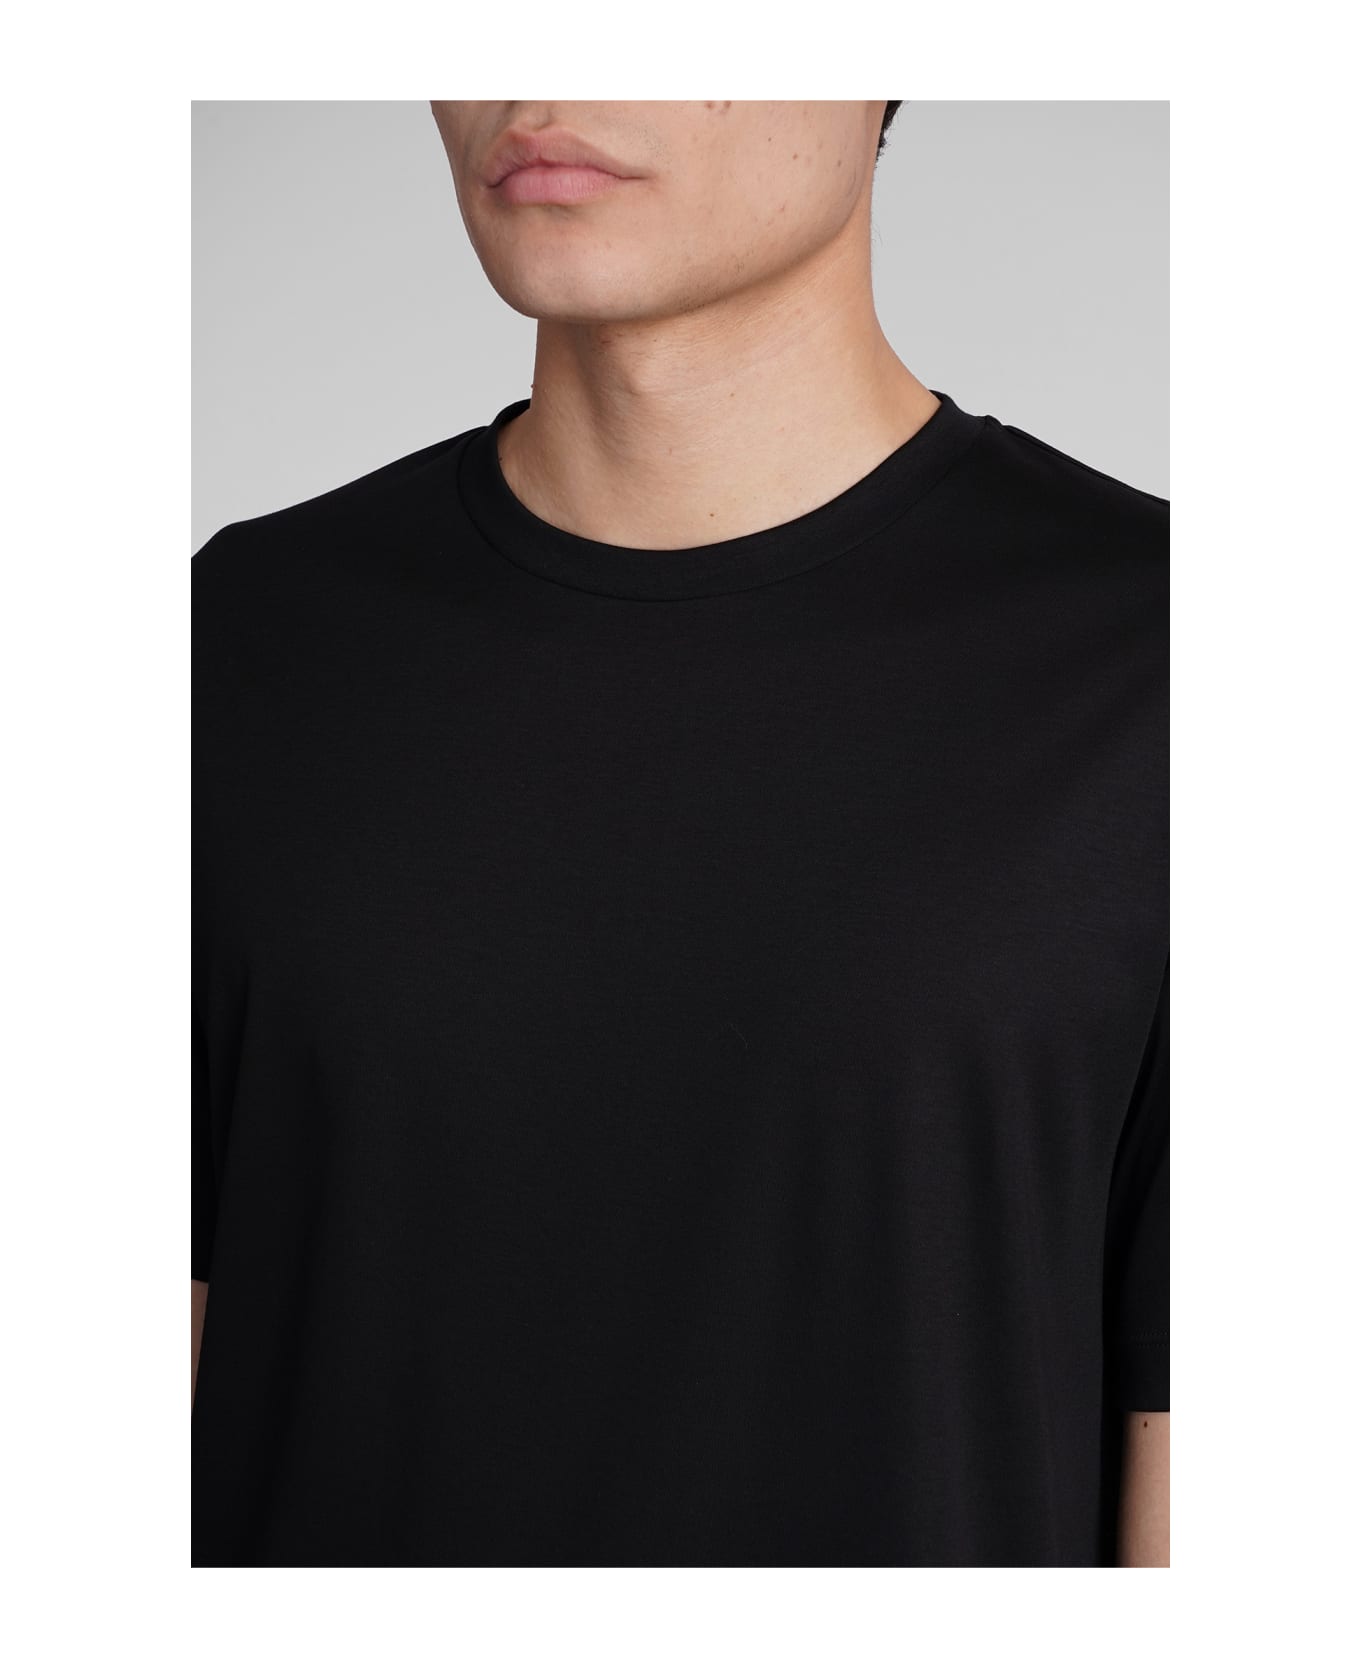 Giorgio Armani T-shirt In Black Cotton - black